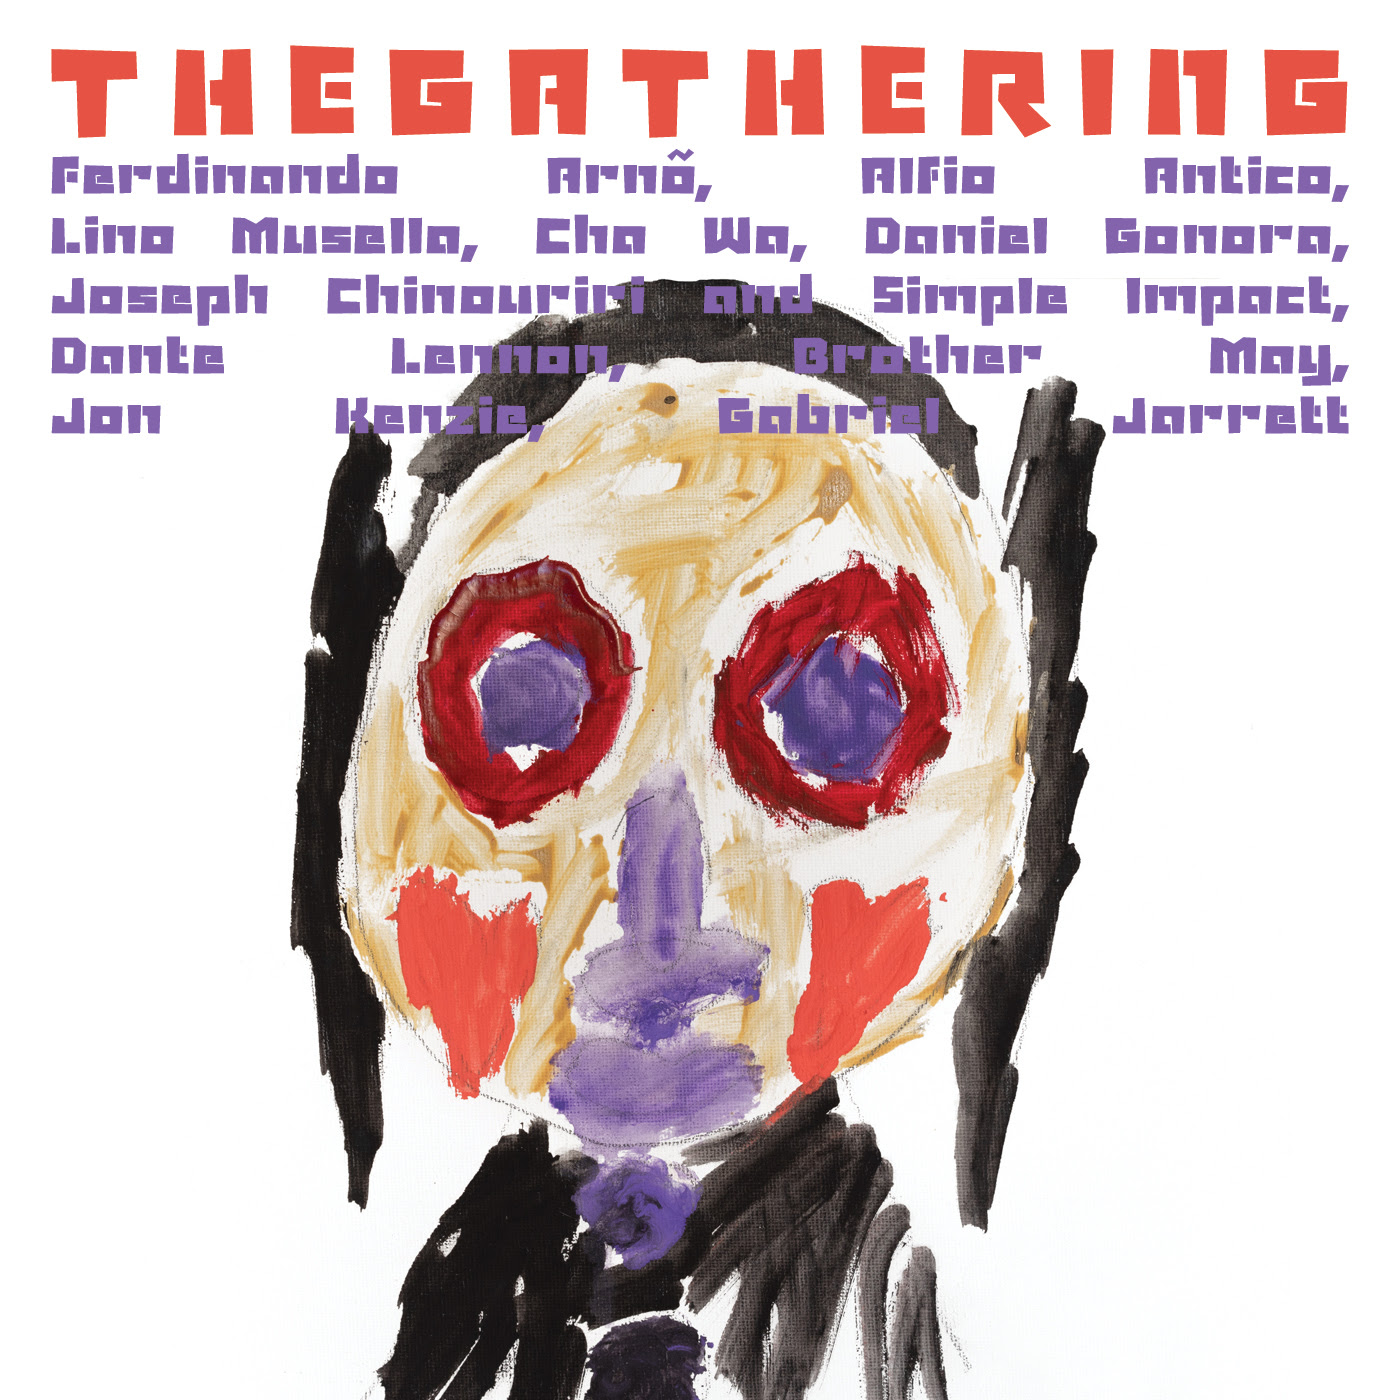 The Gathering (quiet, please!) prodotto e ideato da Ferdinando Arnò si è aggiudicato la Targa Tenco 2022 come miglior “Album collettivo a progetto”